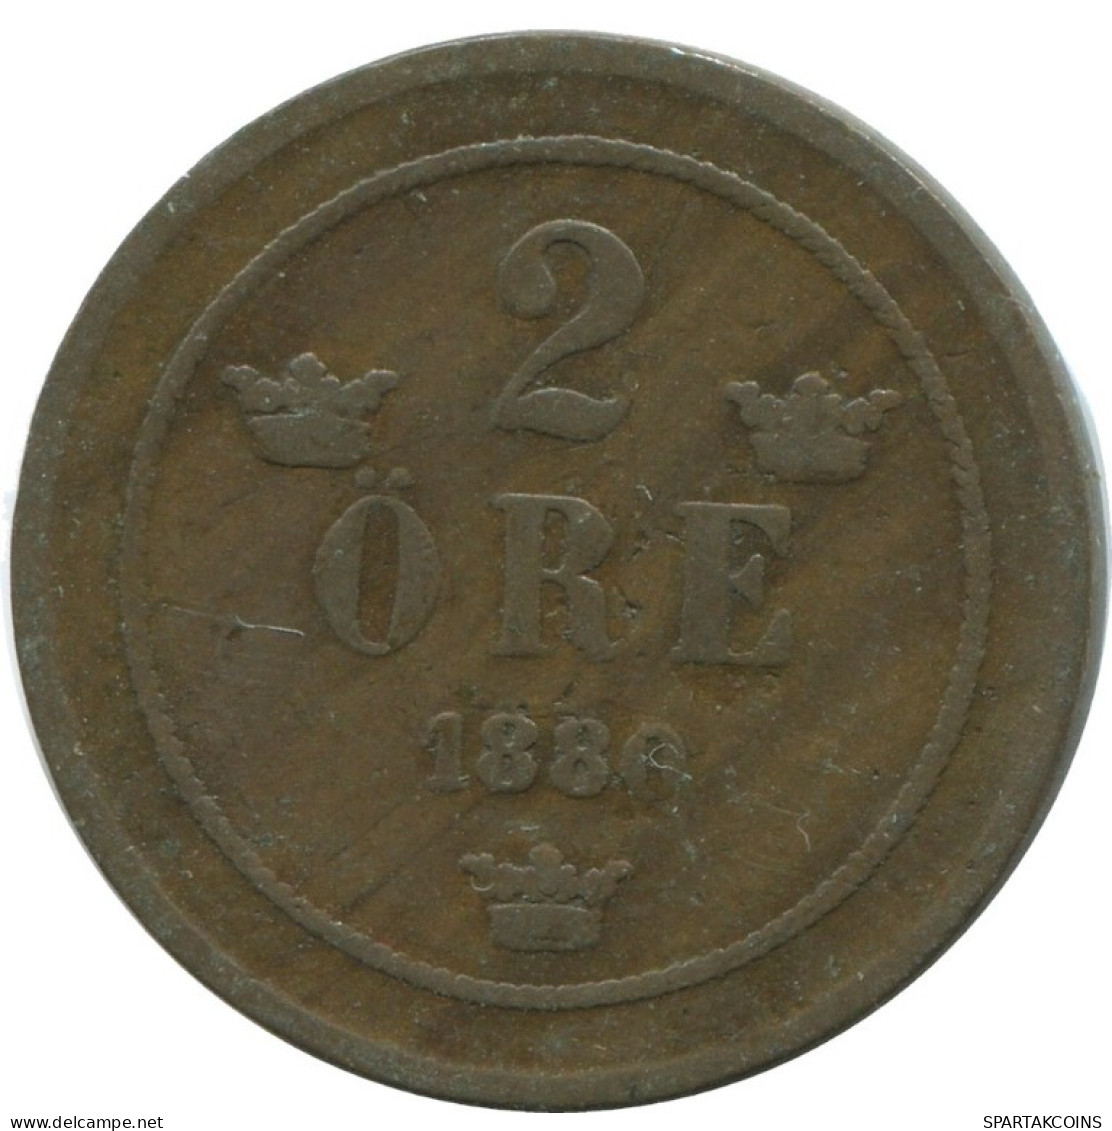 2 ORE 1880 SUECIA SWEDEN Moneda #AD010.2.E.A - Sweden